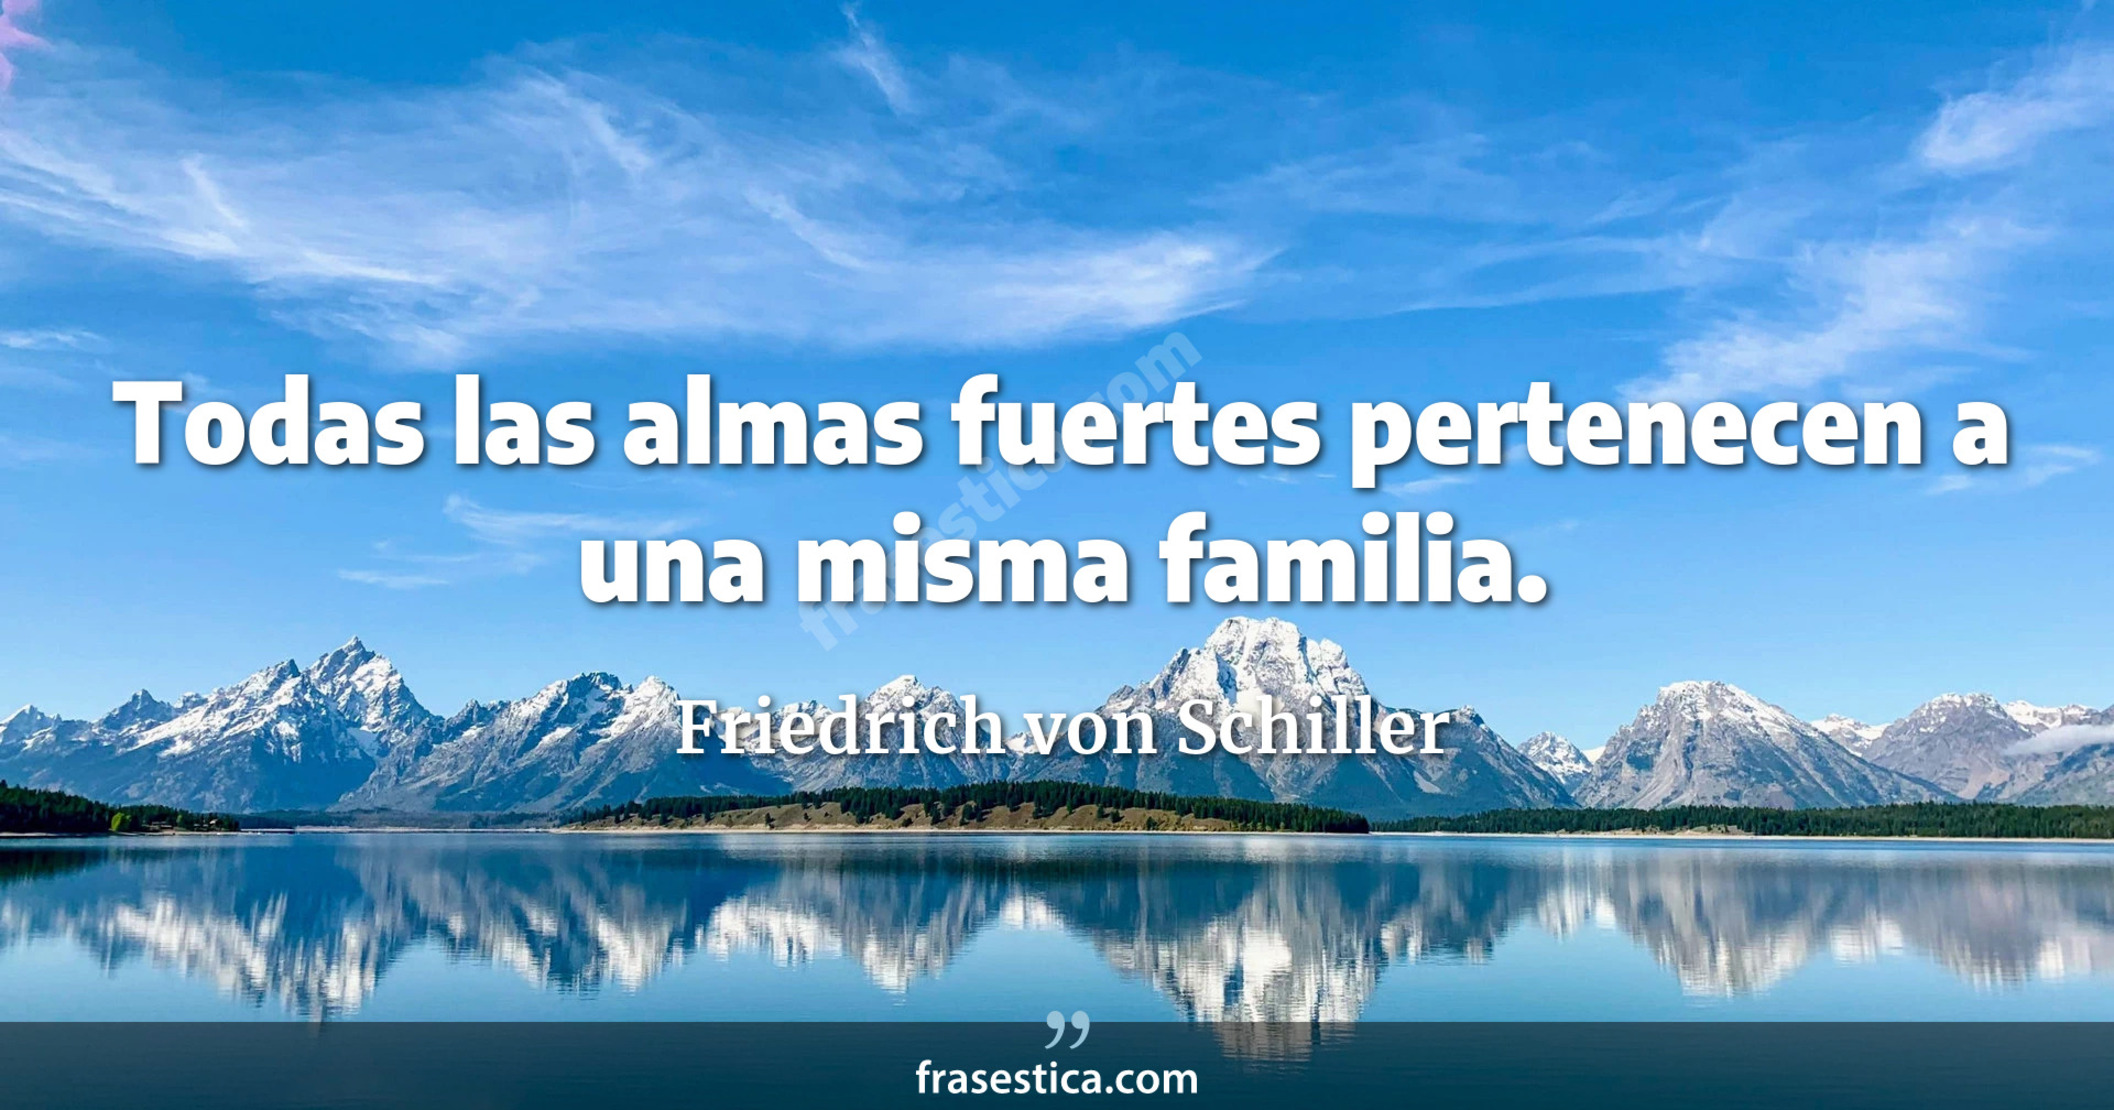 Todas las almas fuertes pertenecen a una misma familia. - Friedrich von Schiller